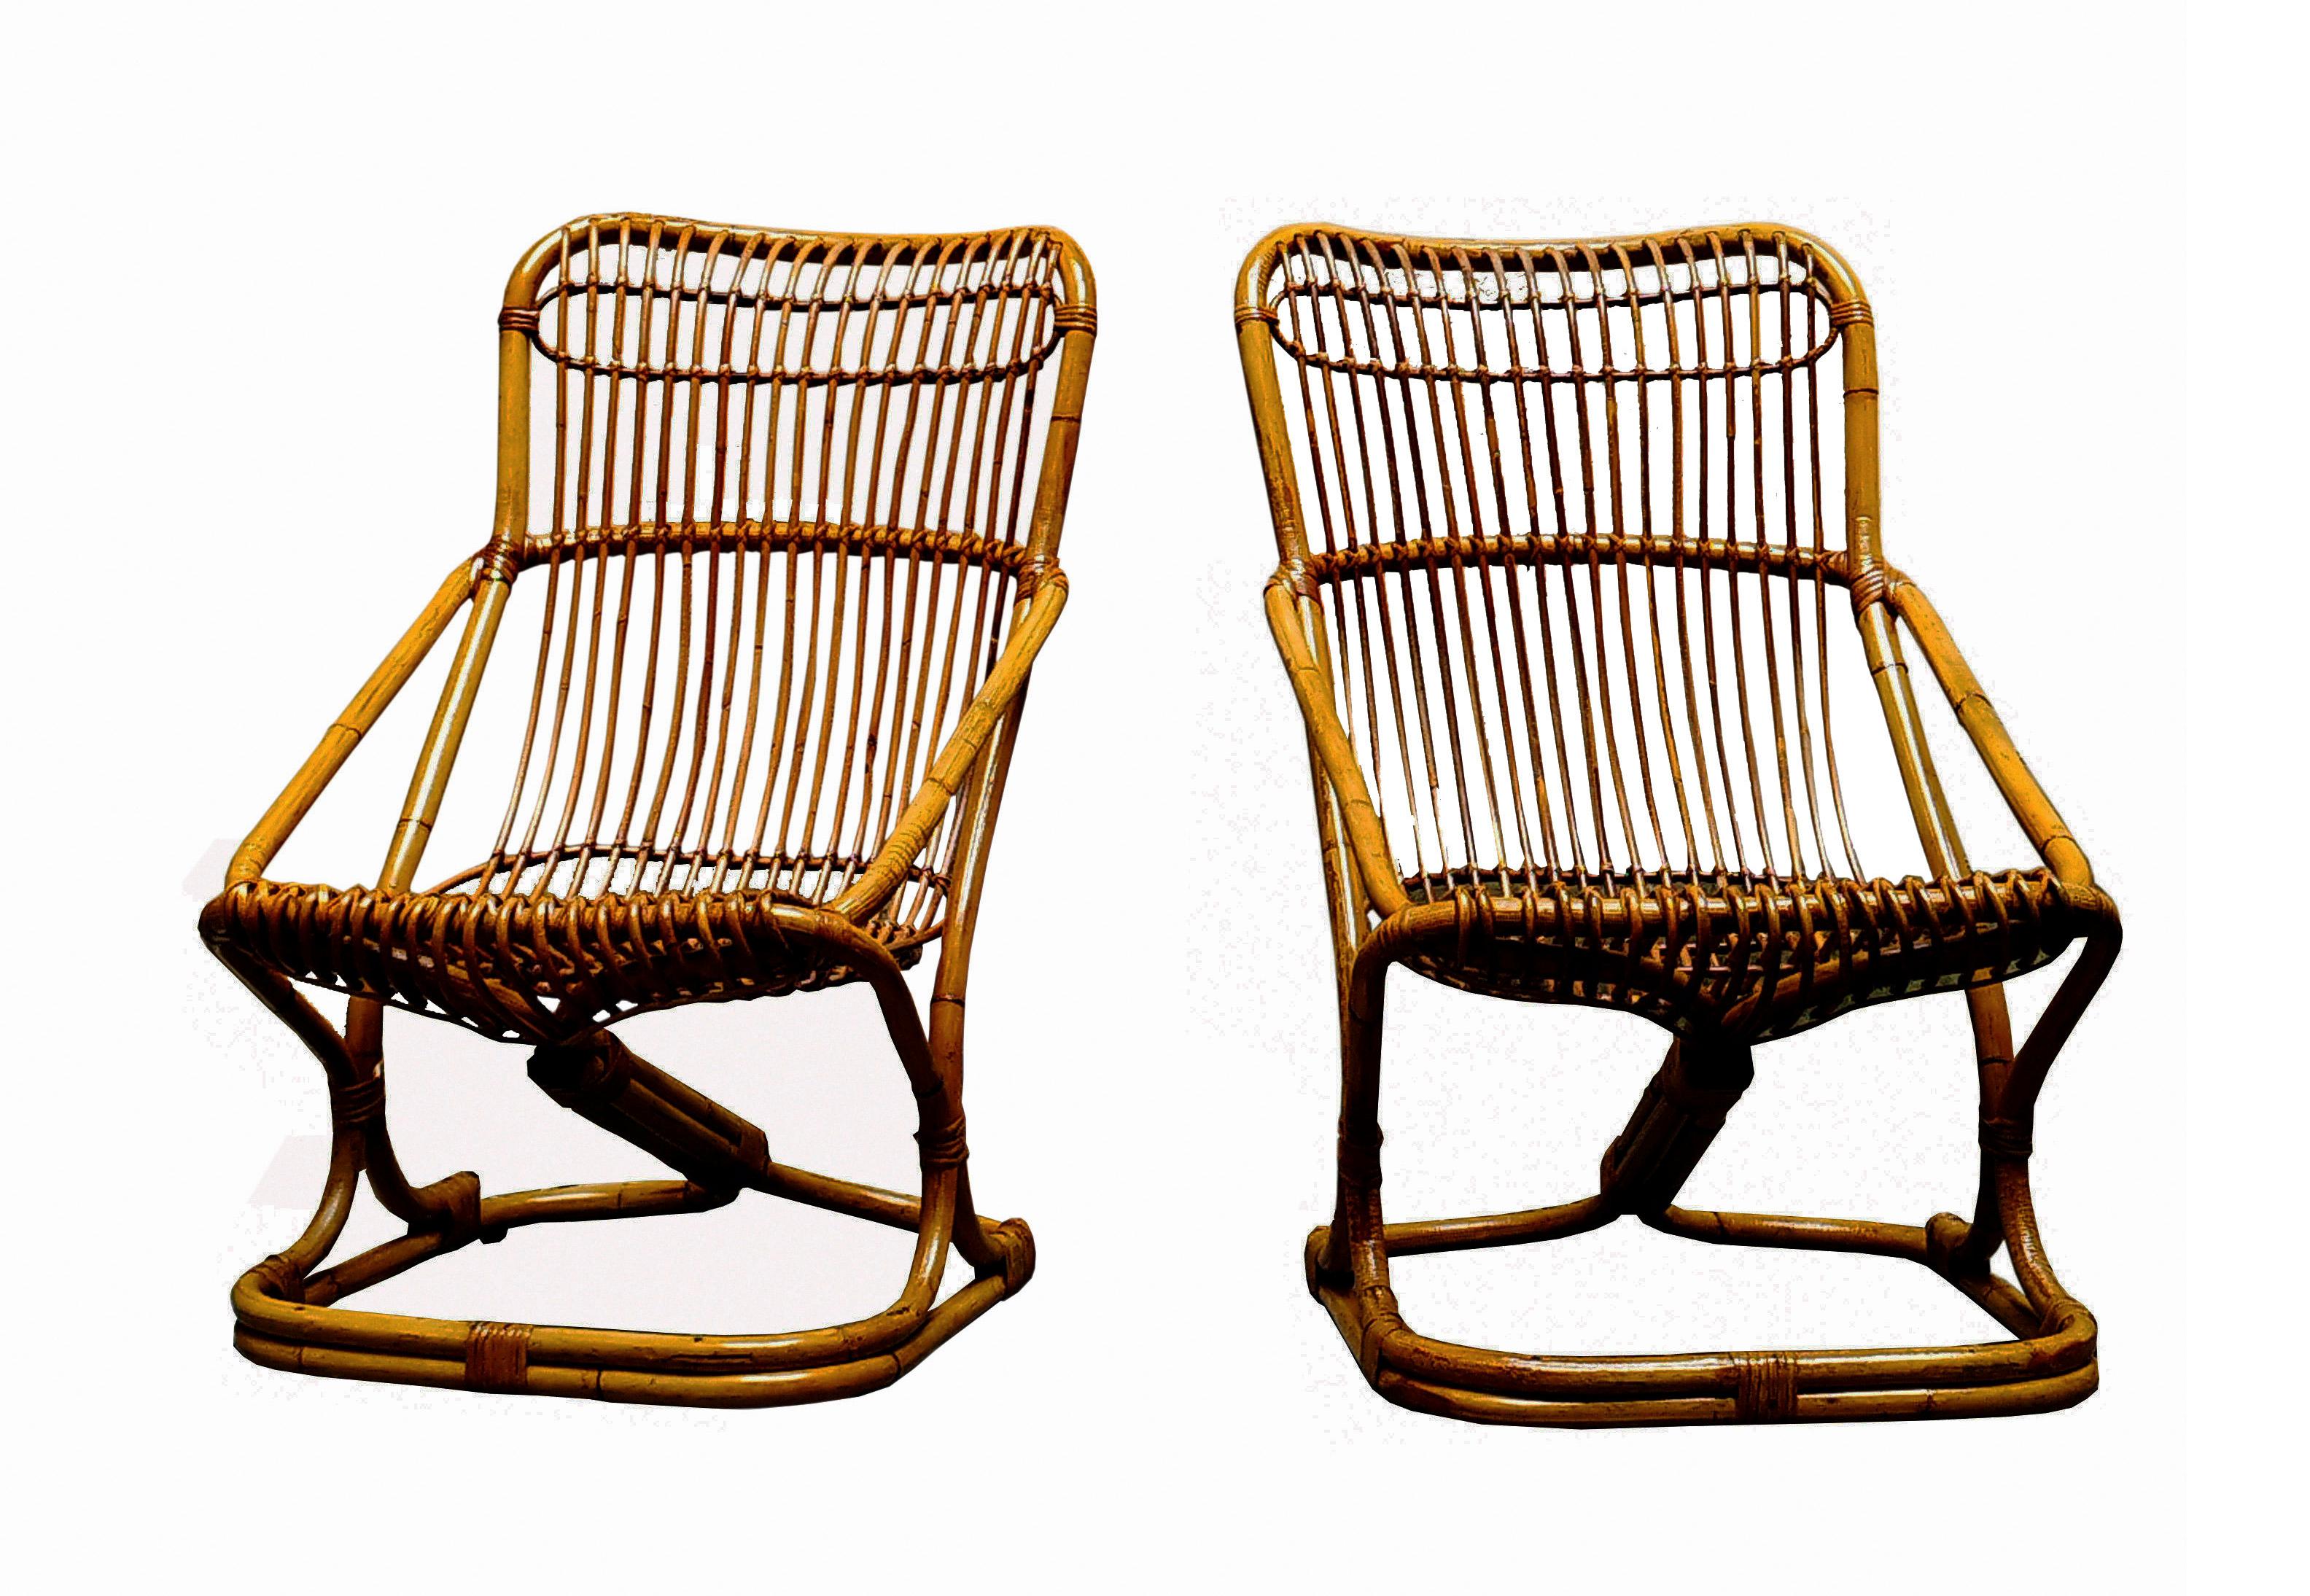 Elégante paire de fauteuils en malacca des années 1960, conçus par Tito Agnoli. Tito Agnoli est né à Lima dans une famille italienne ; d'abord architecte puis designer, il a collaboré avec de nombreuses entreprises italiennes, dont Bonacina1889.